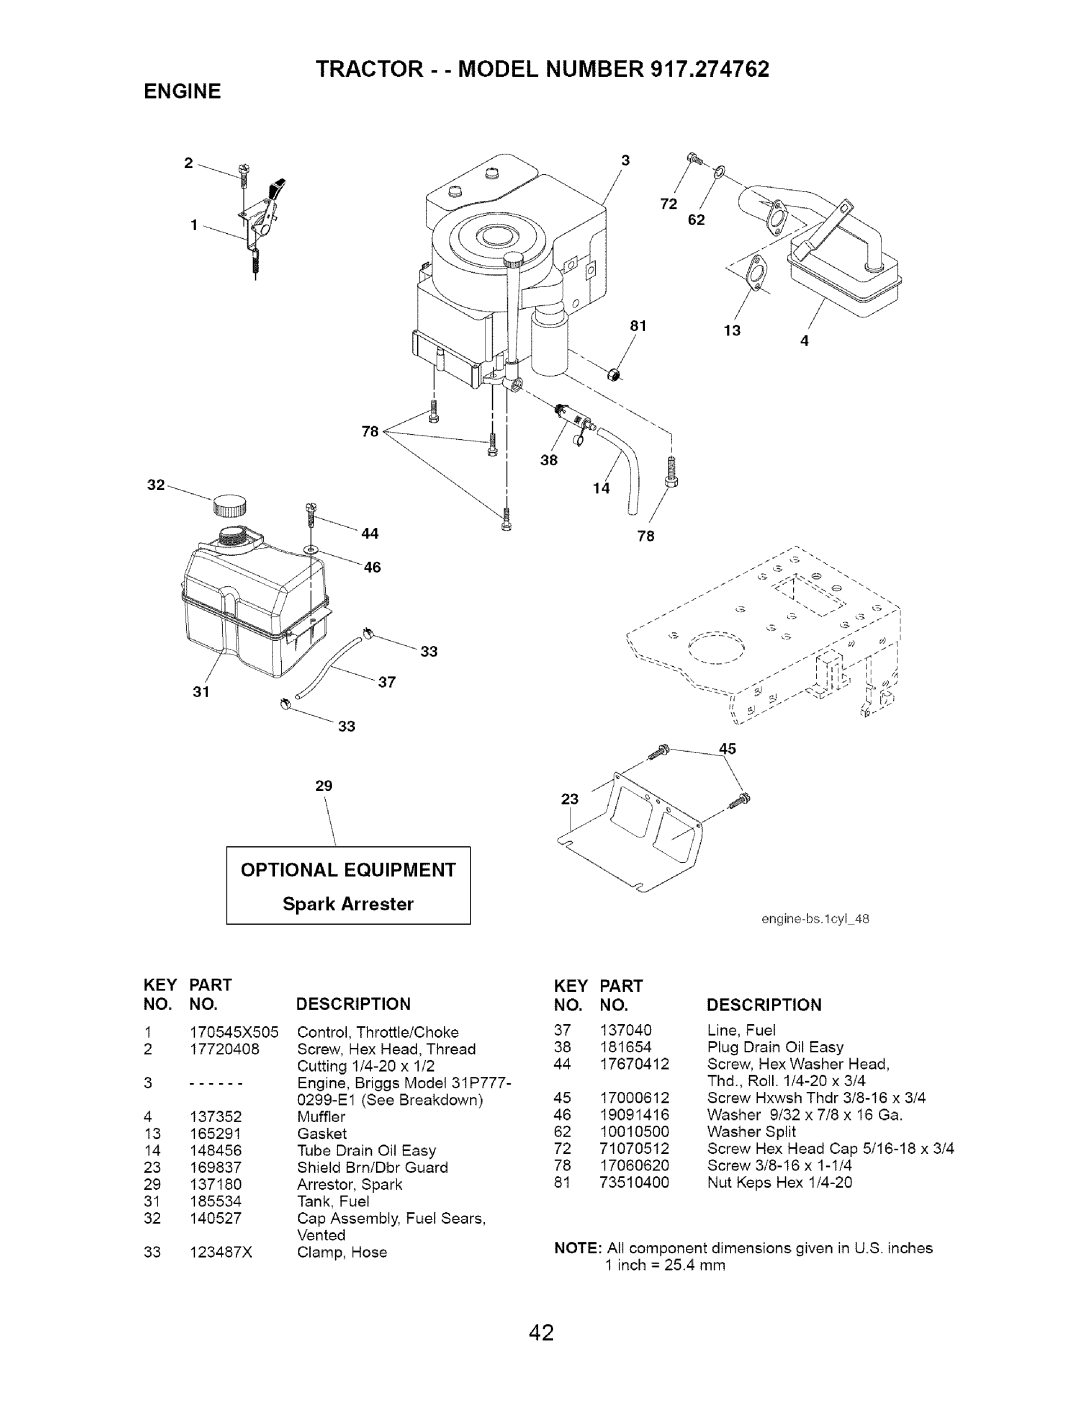 Craftsman 917.274762 owner manual Engine, Optional, Equipment, Spark, Arrester, Part, Description 